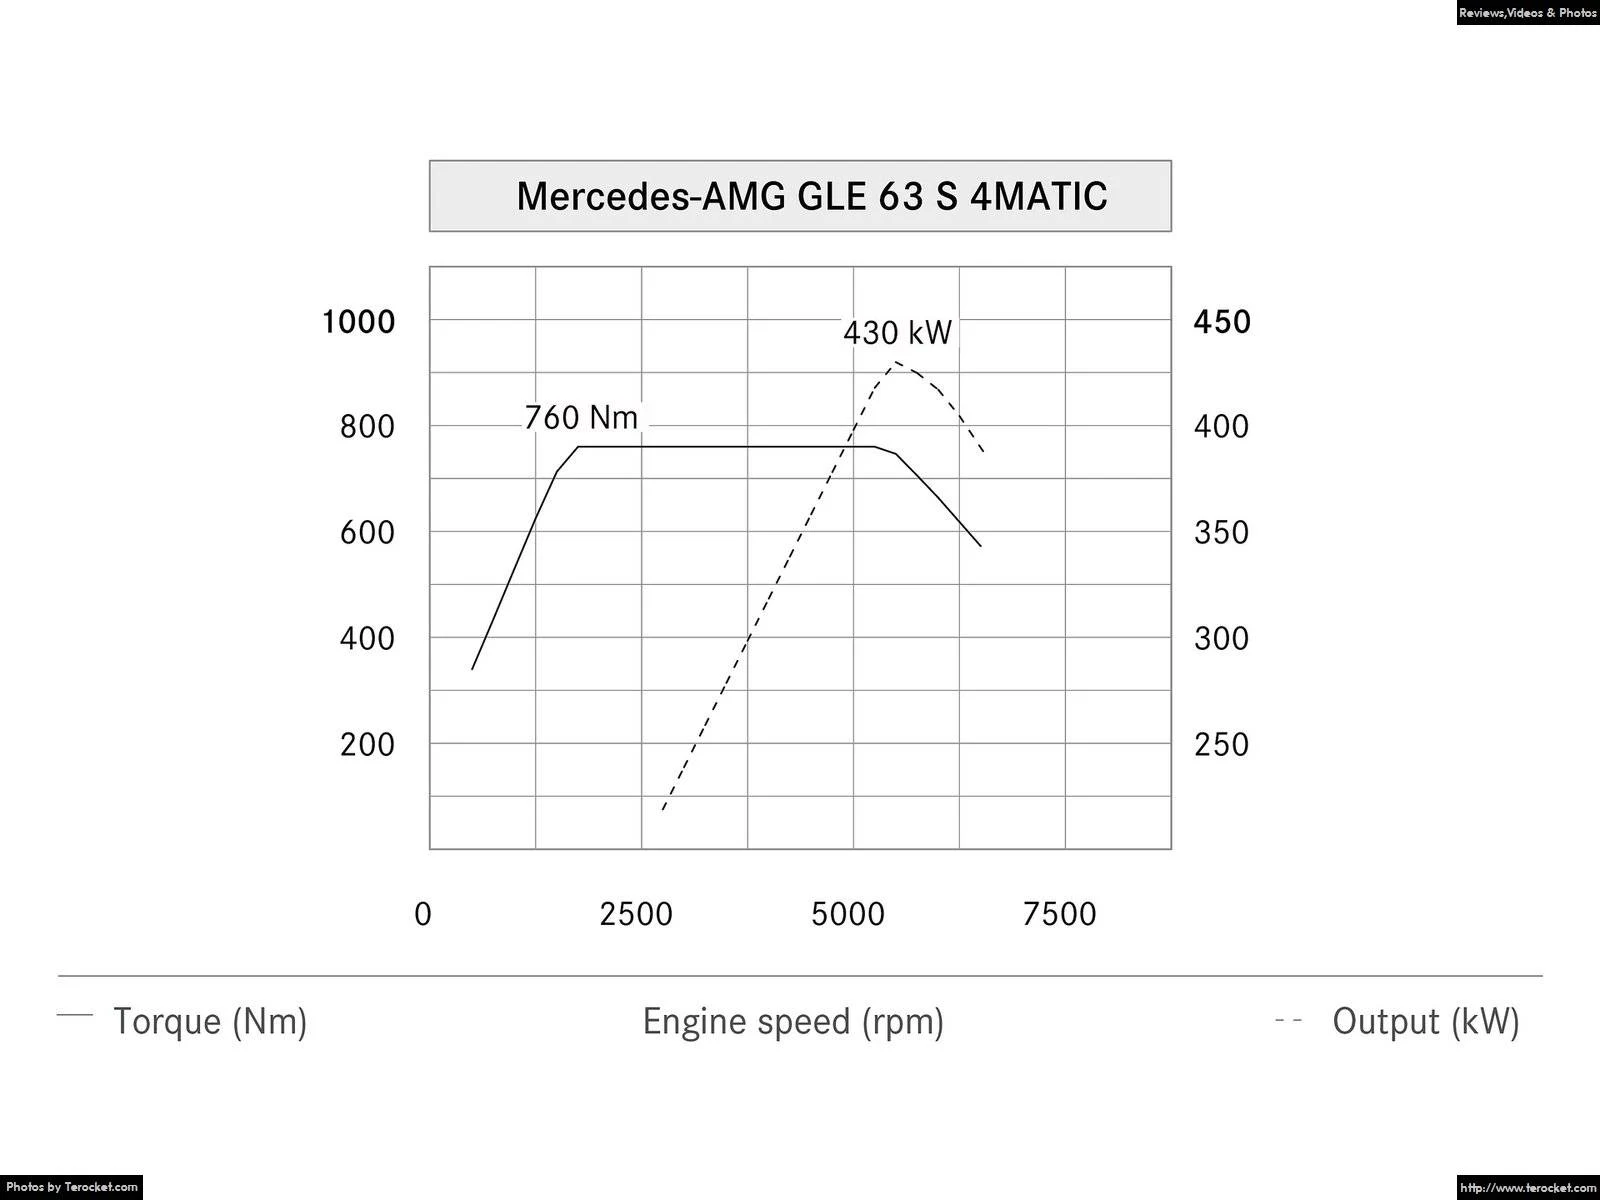 Hình ảnh xe ô tô Mercedes-Benz GLE 63 AMG 2016 & nội ngoại thất